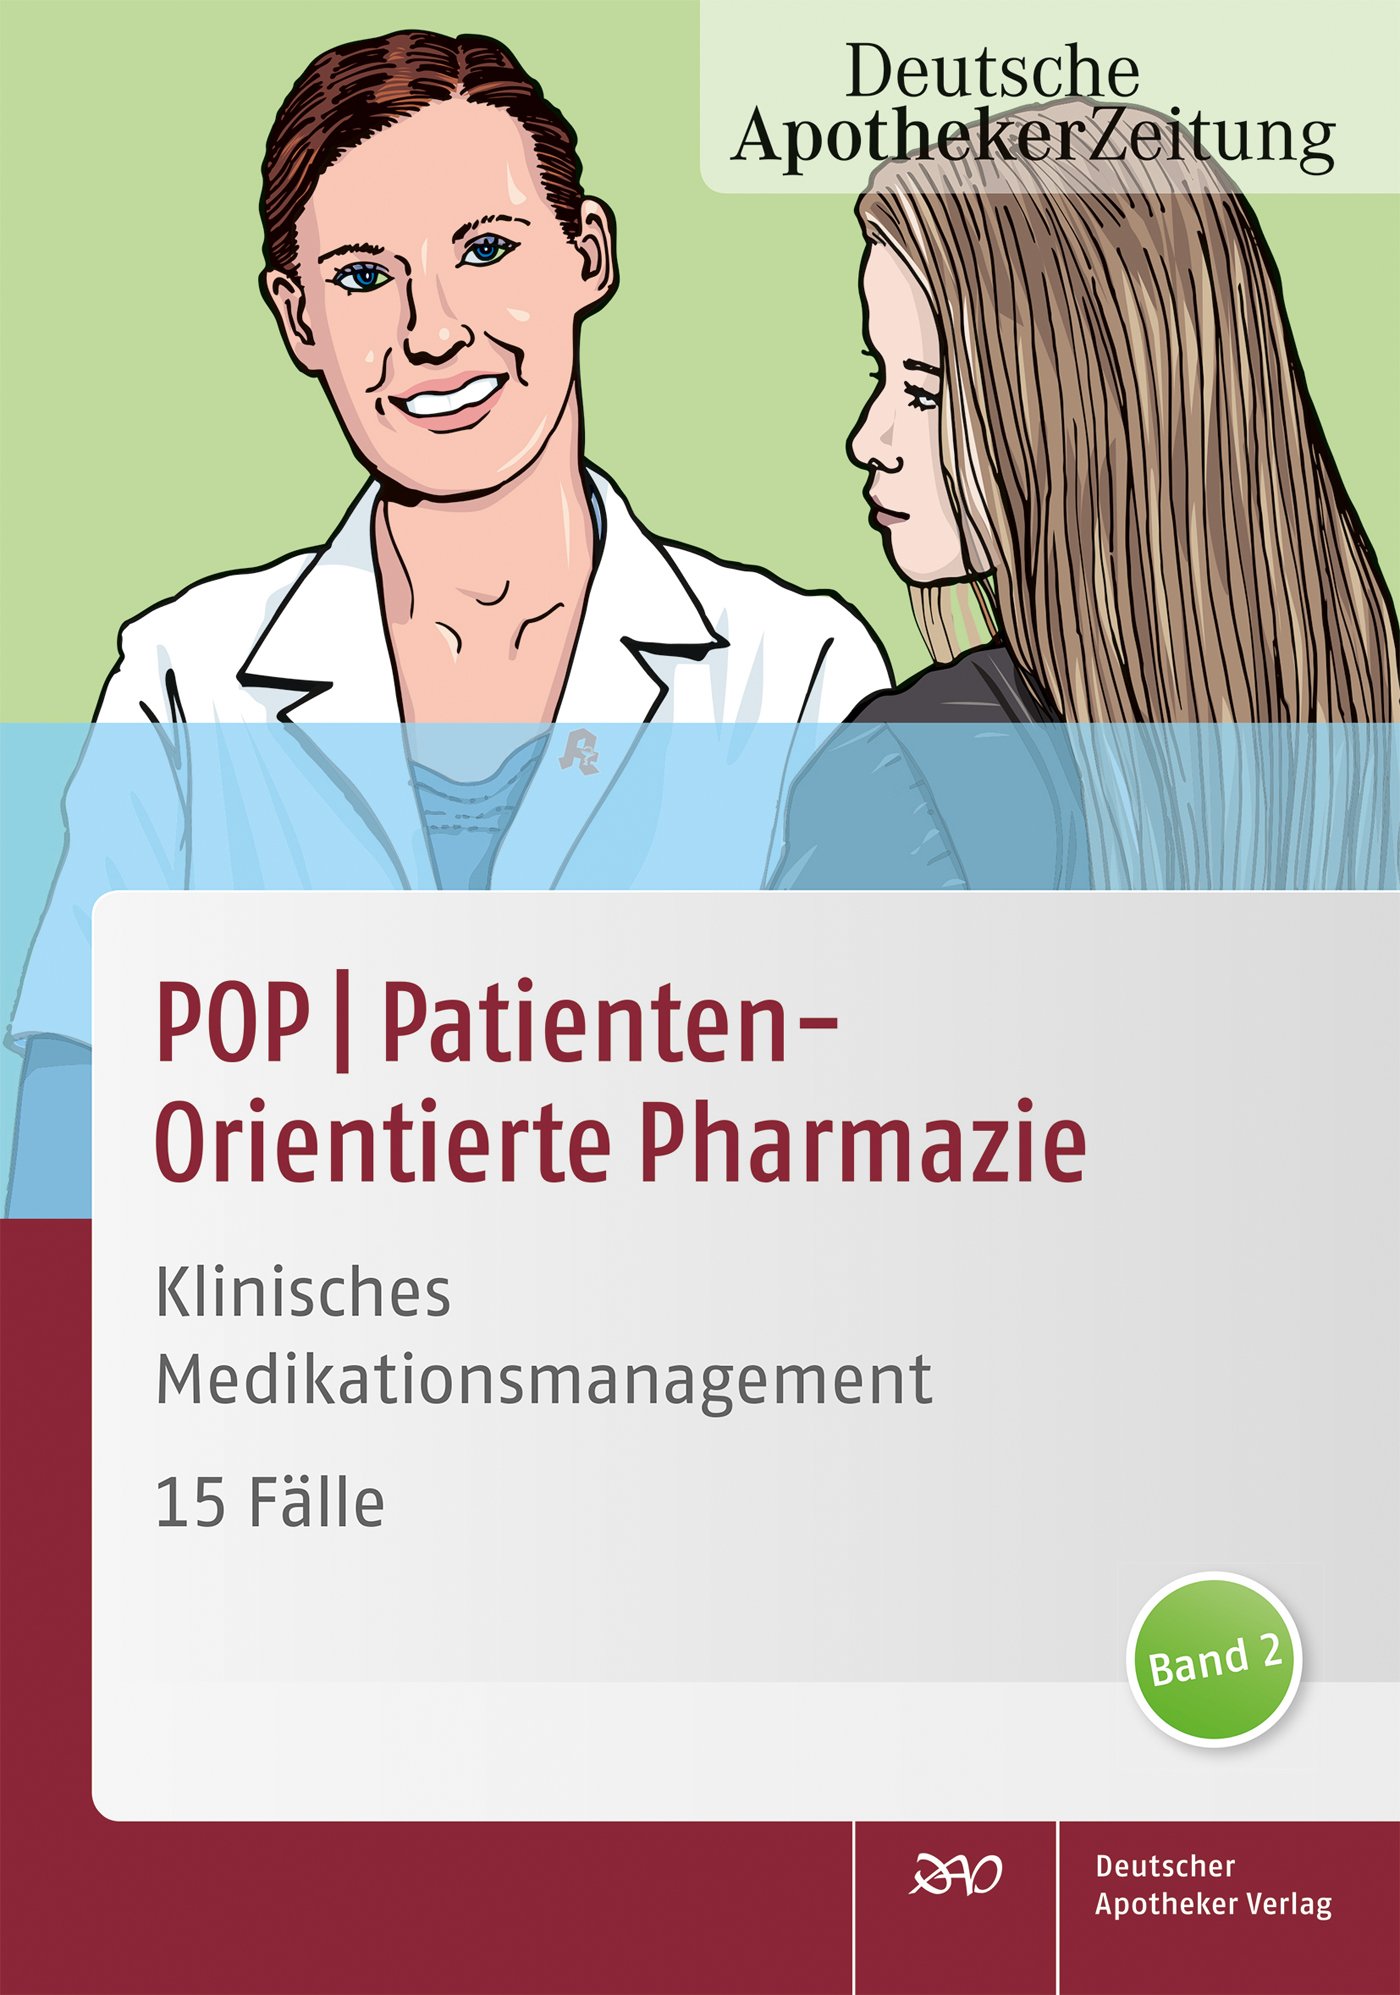 POP
PatientenOrientierte Pharmazie